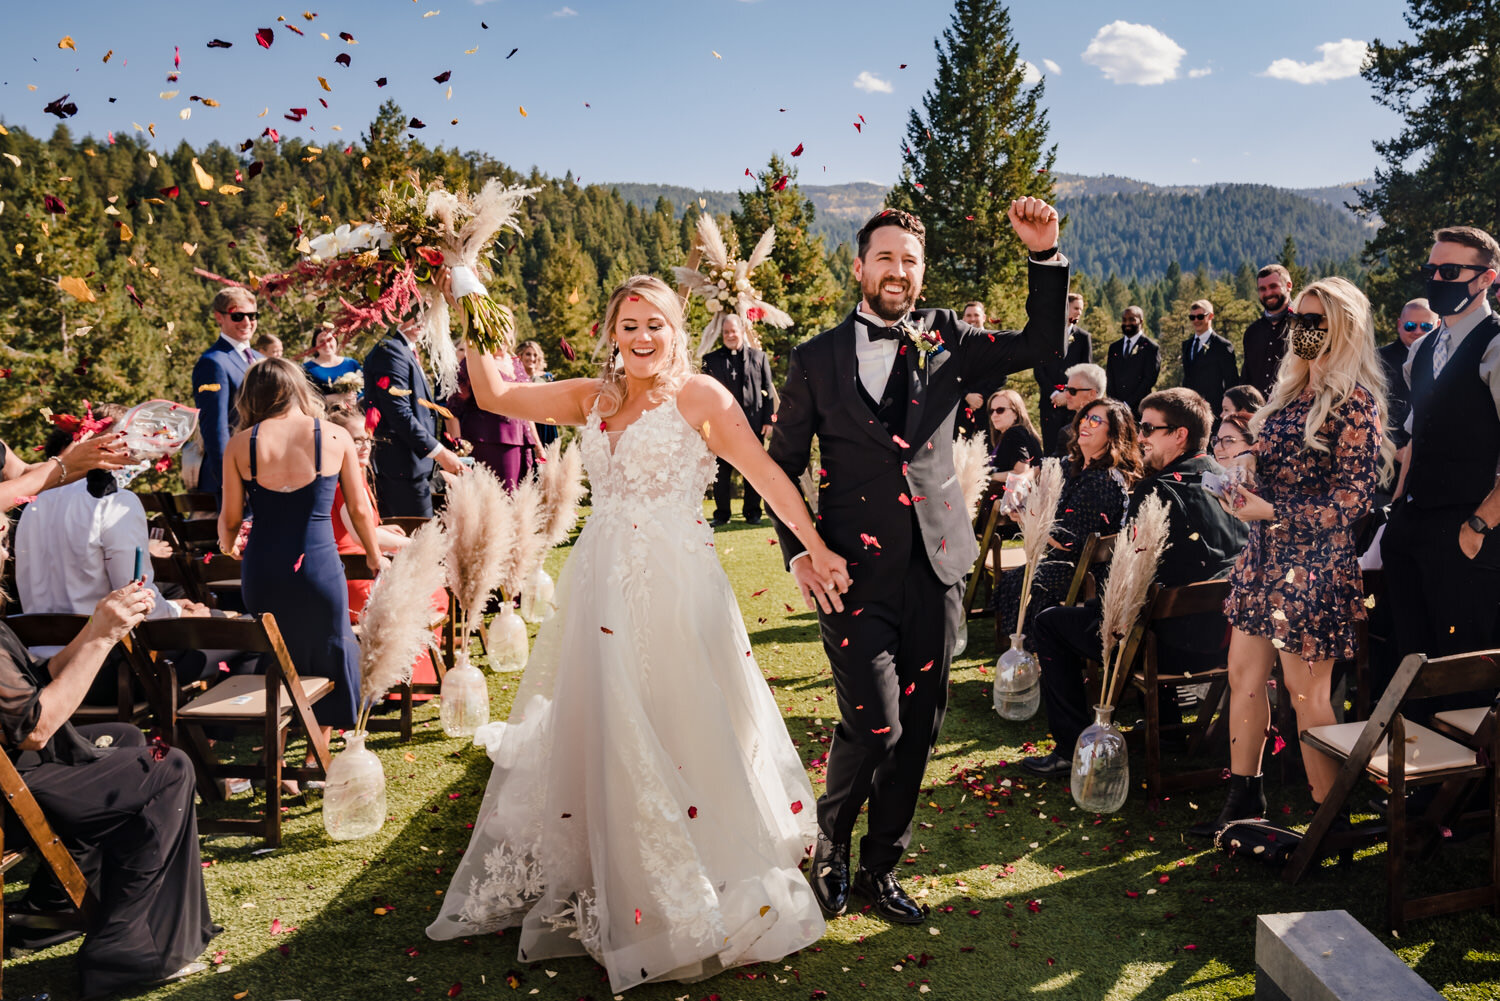  The Woodlands Colorado wedding photos by Morrison wedding photographer, JMGant Photography 